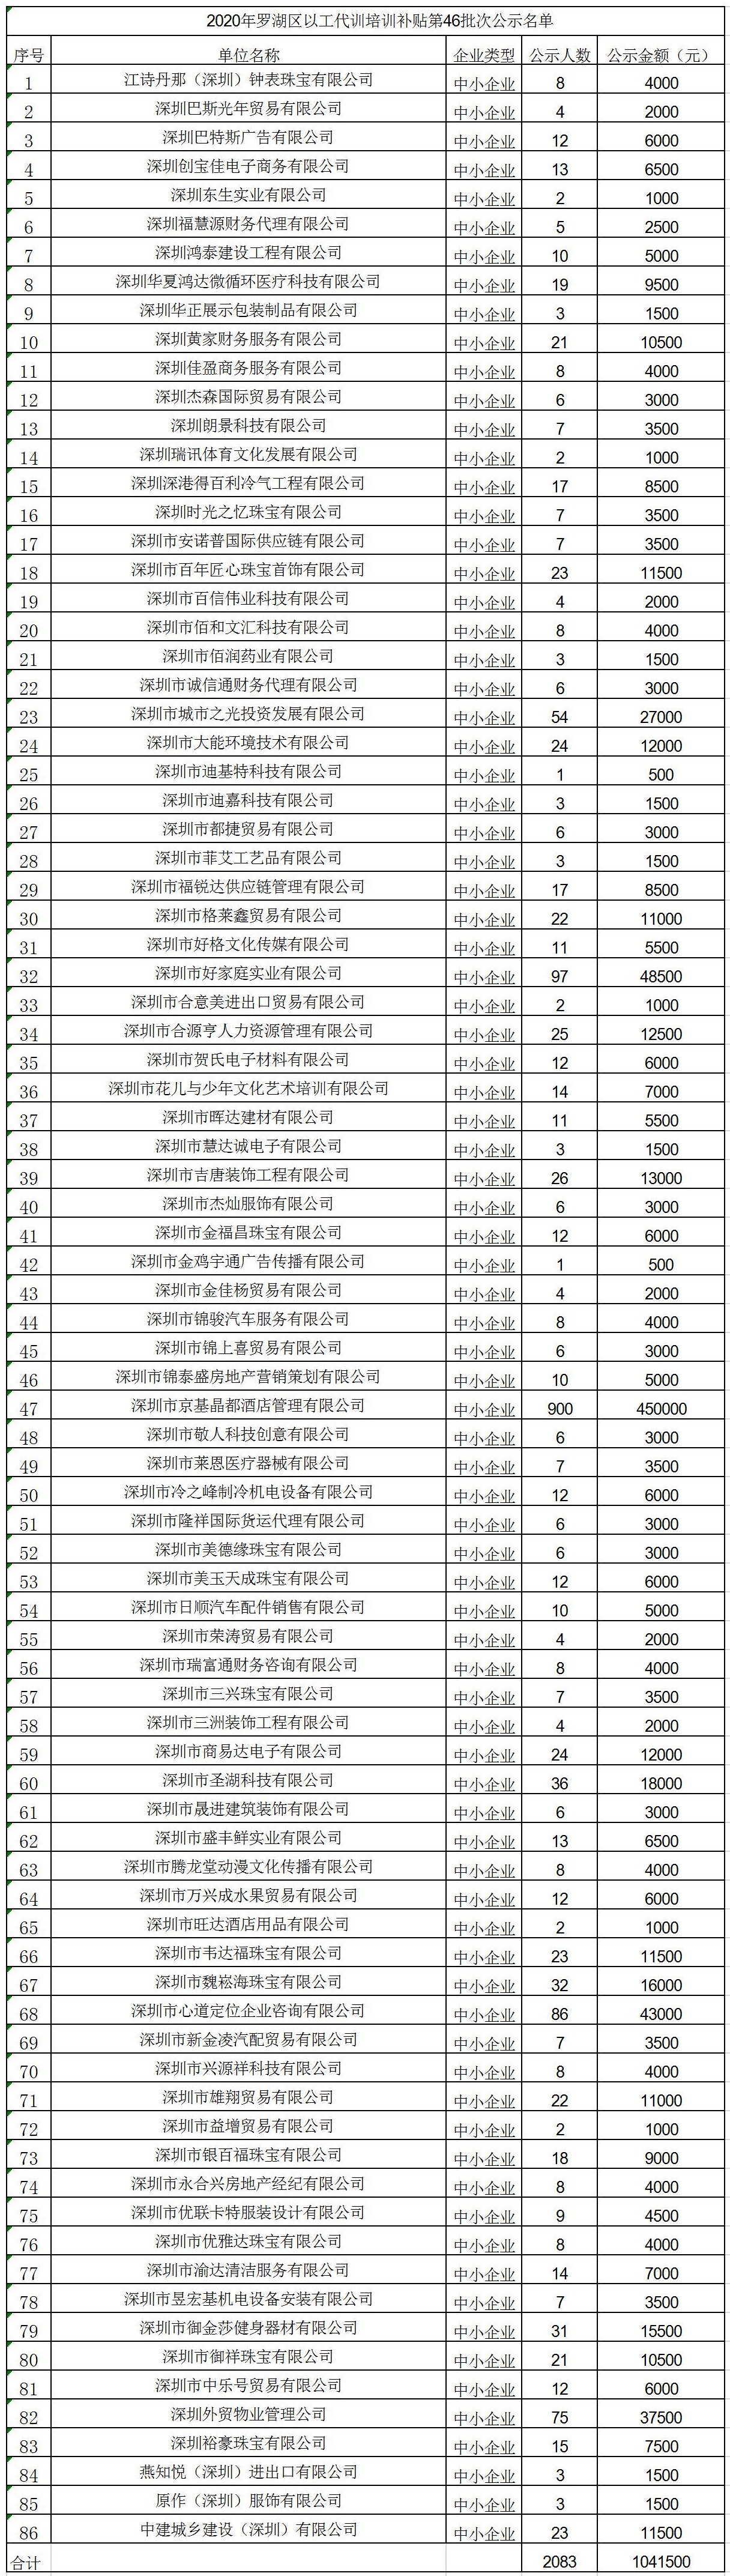 2020年深圳市罗湖区以工代训培训补贴第46批次公示名单.jpg